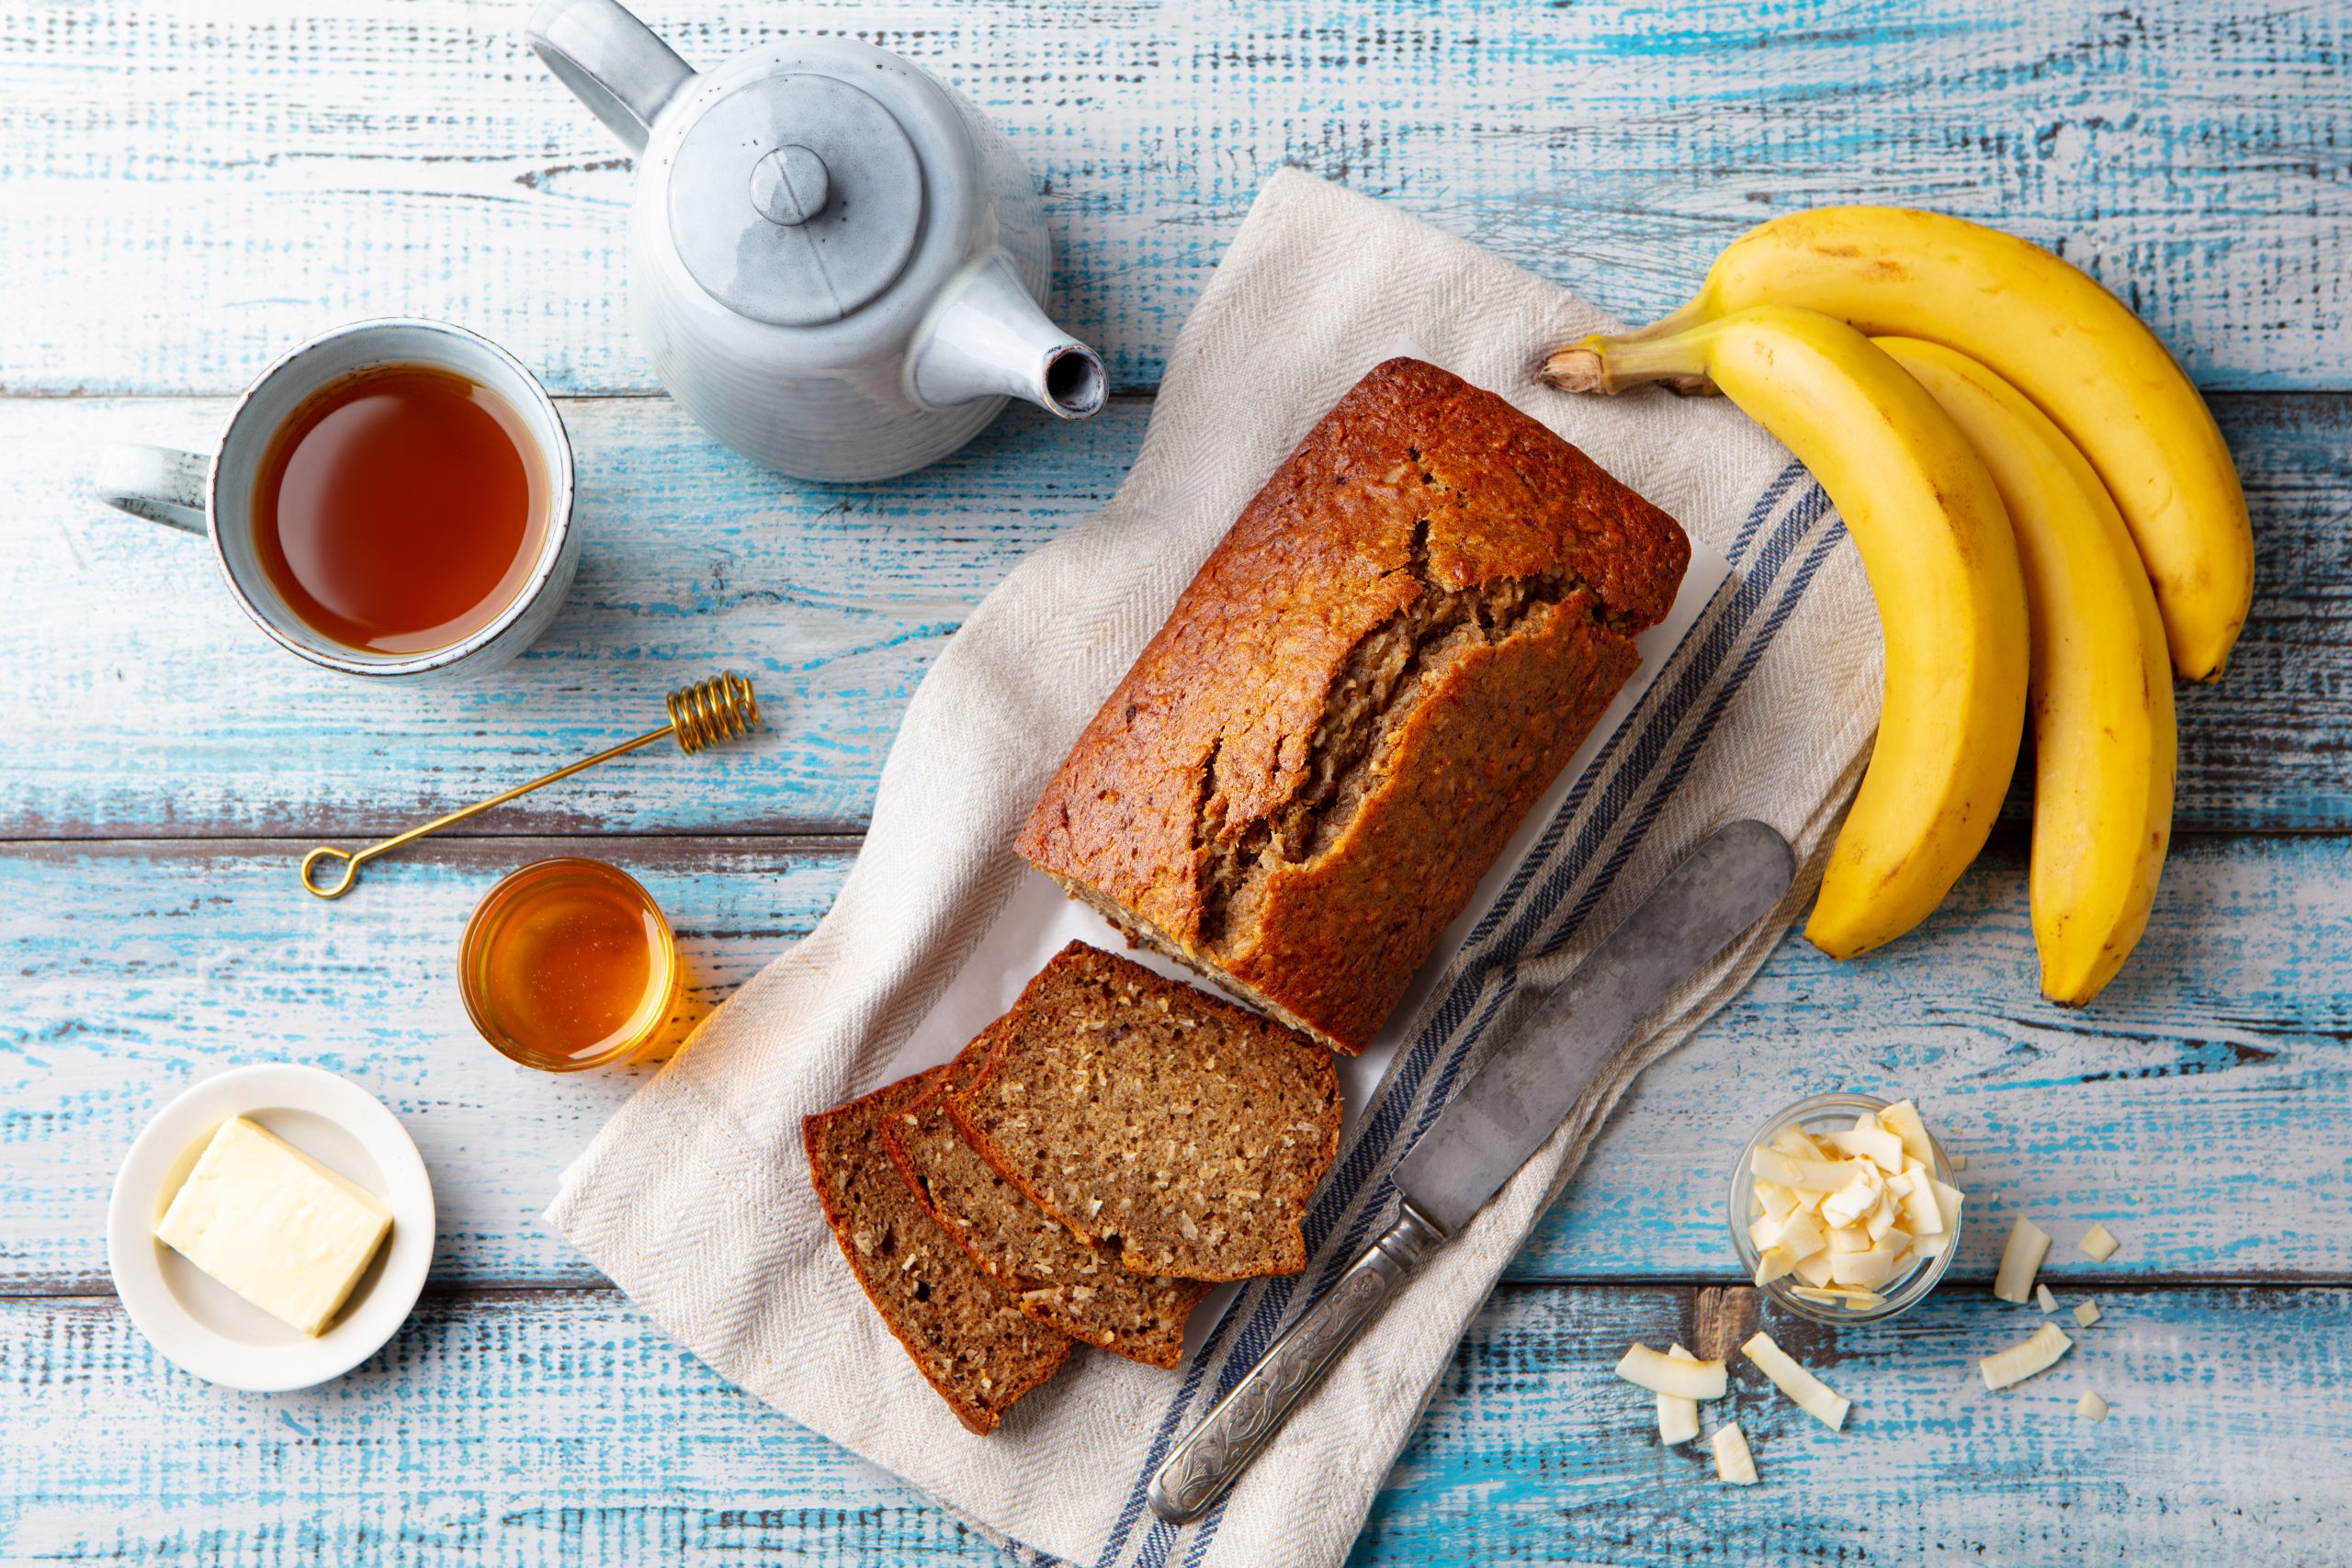 Tenha um café da manhã delicioso com este bolo de banana com aveia